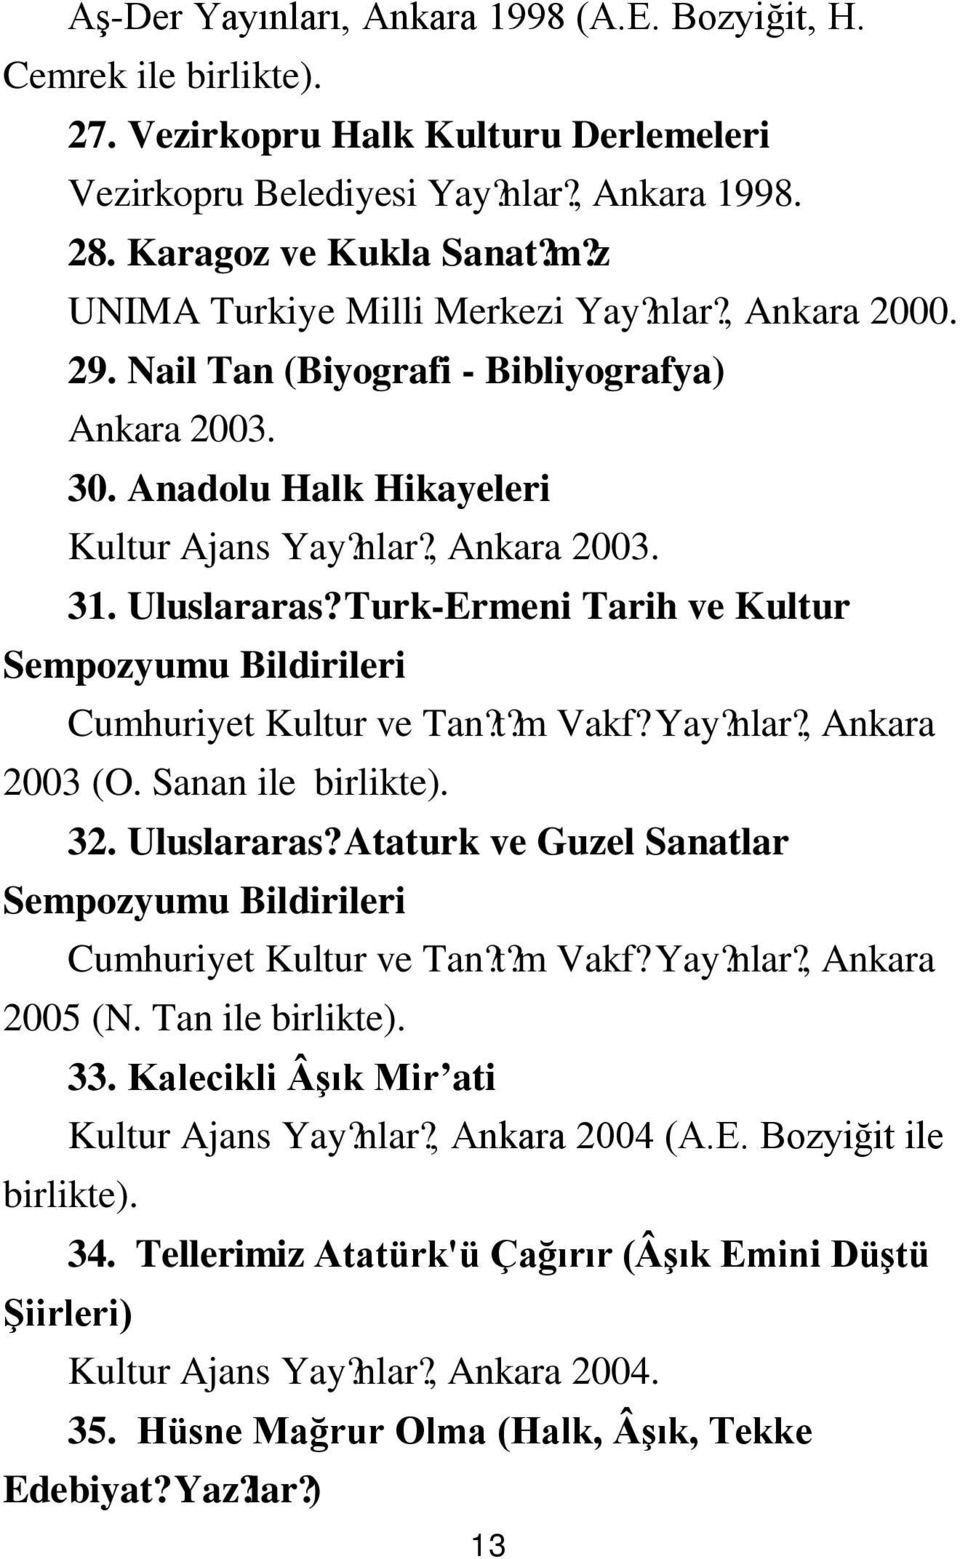 Turk-Ermeni Tarih ve Kultur Sempozyumu Bildirileri Cumhuriyet Kultur ve Tan?? t m Vakf? Yay? nlar?, Ankara 2003 (O. Sanan ile birlikte). 32. Uluslararas?